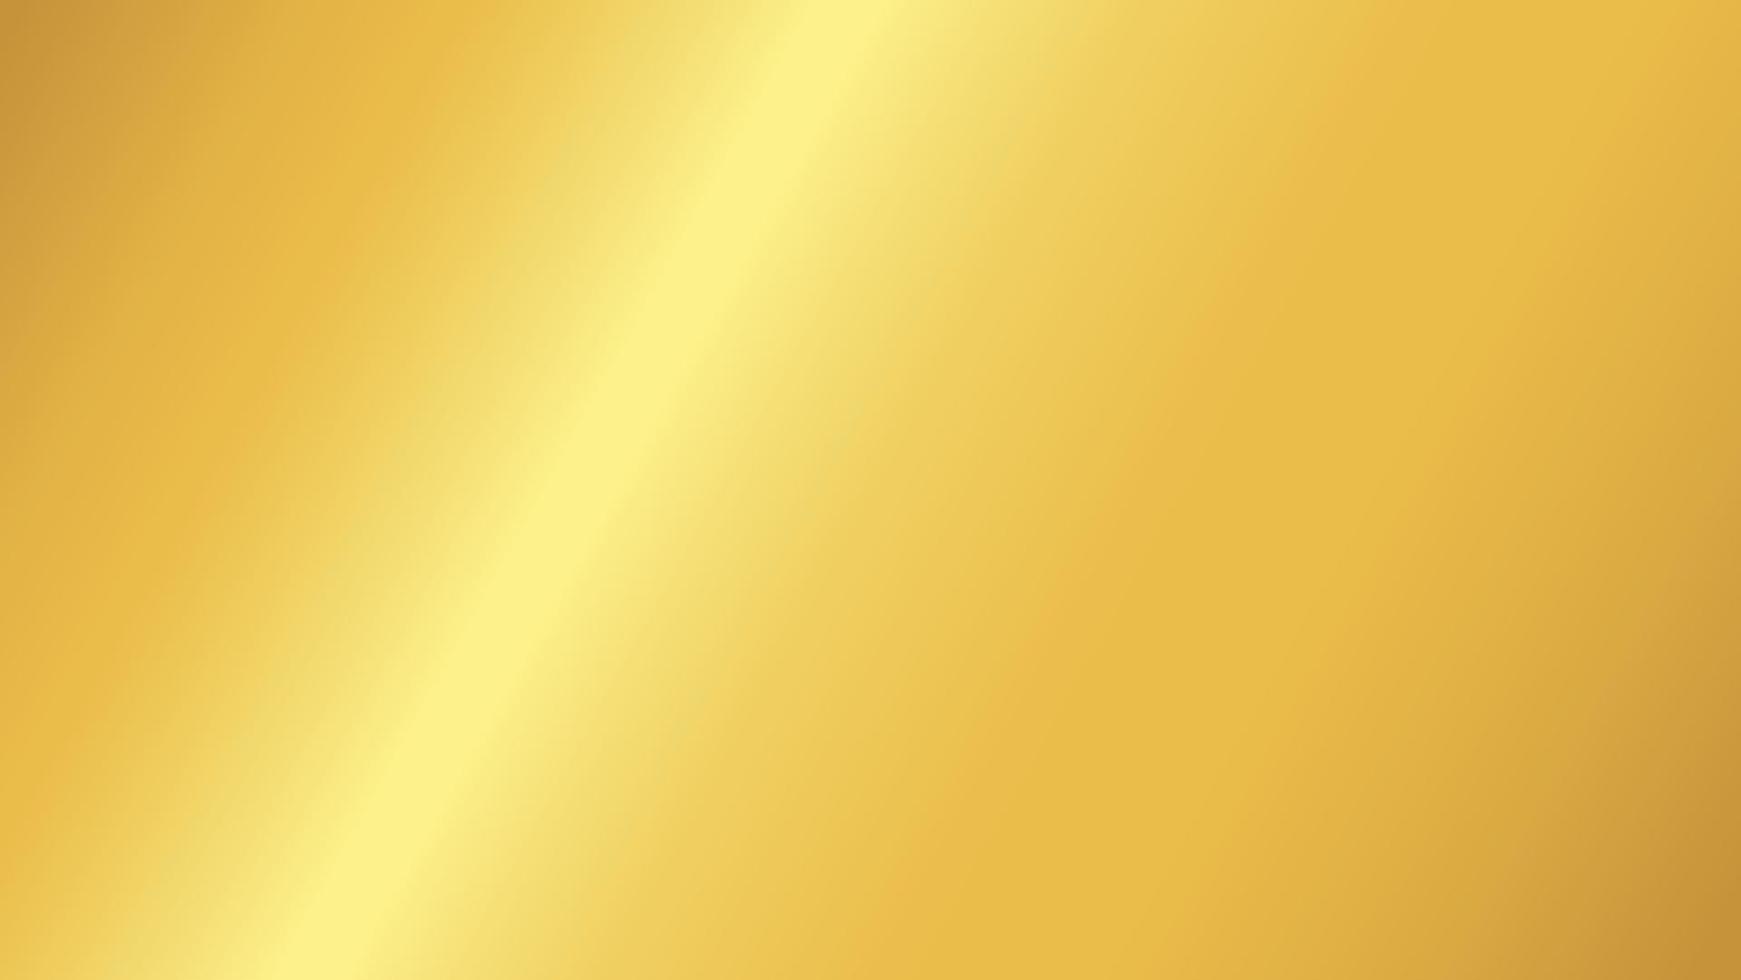 goldverlaufsfarbeffekthintergrund für grafikdesignelement vektor